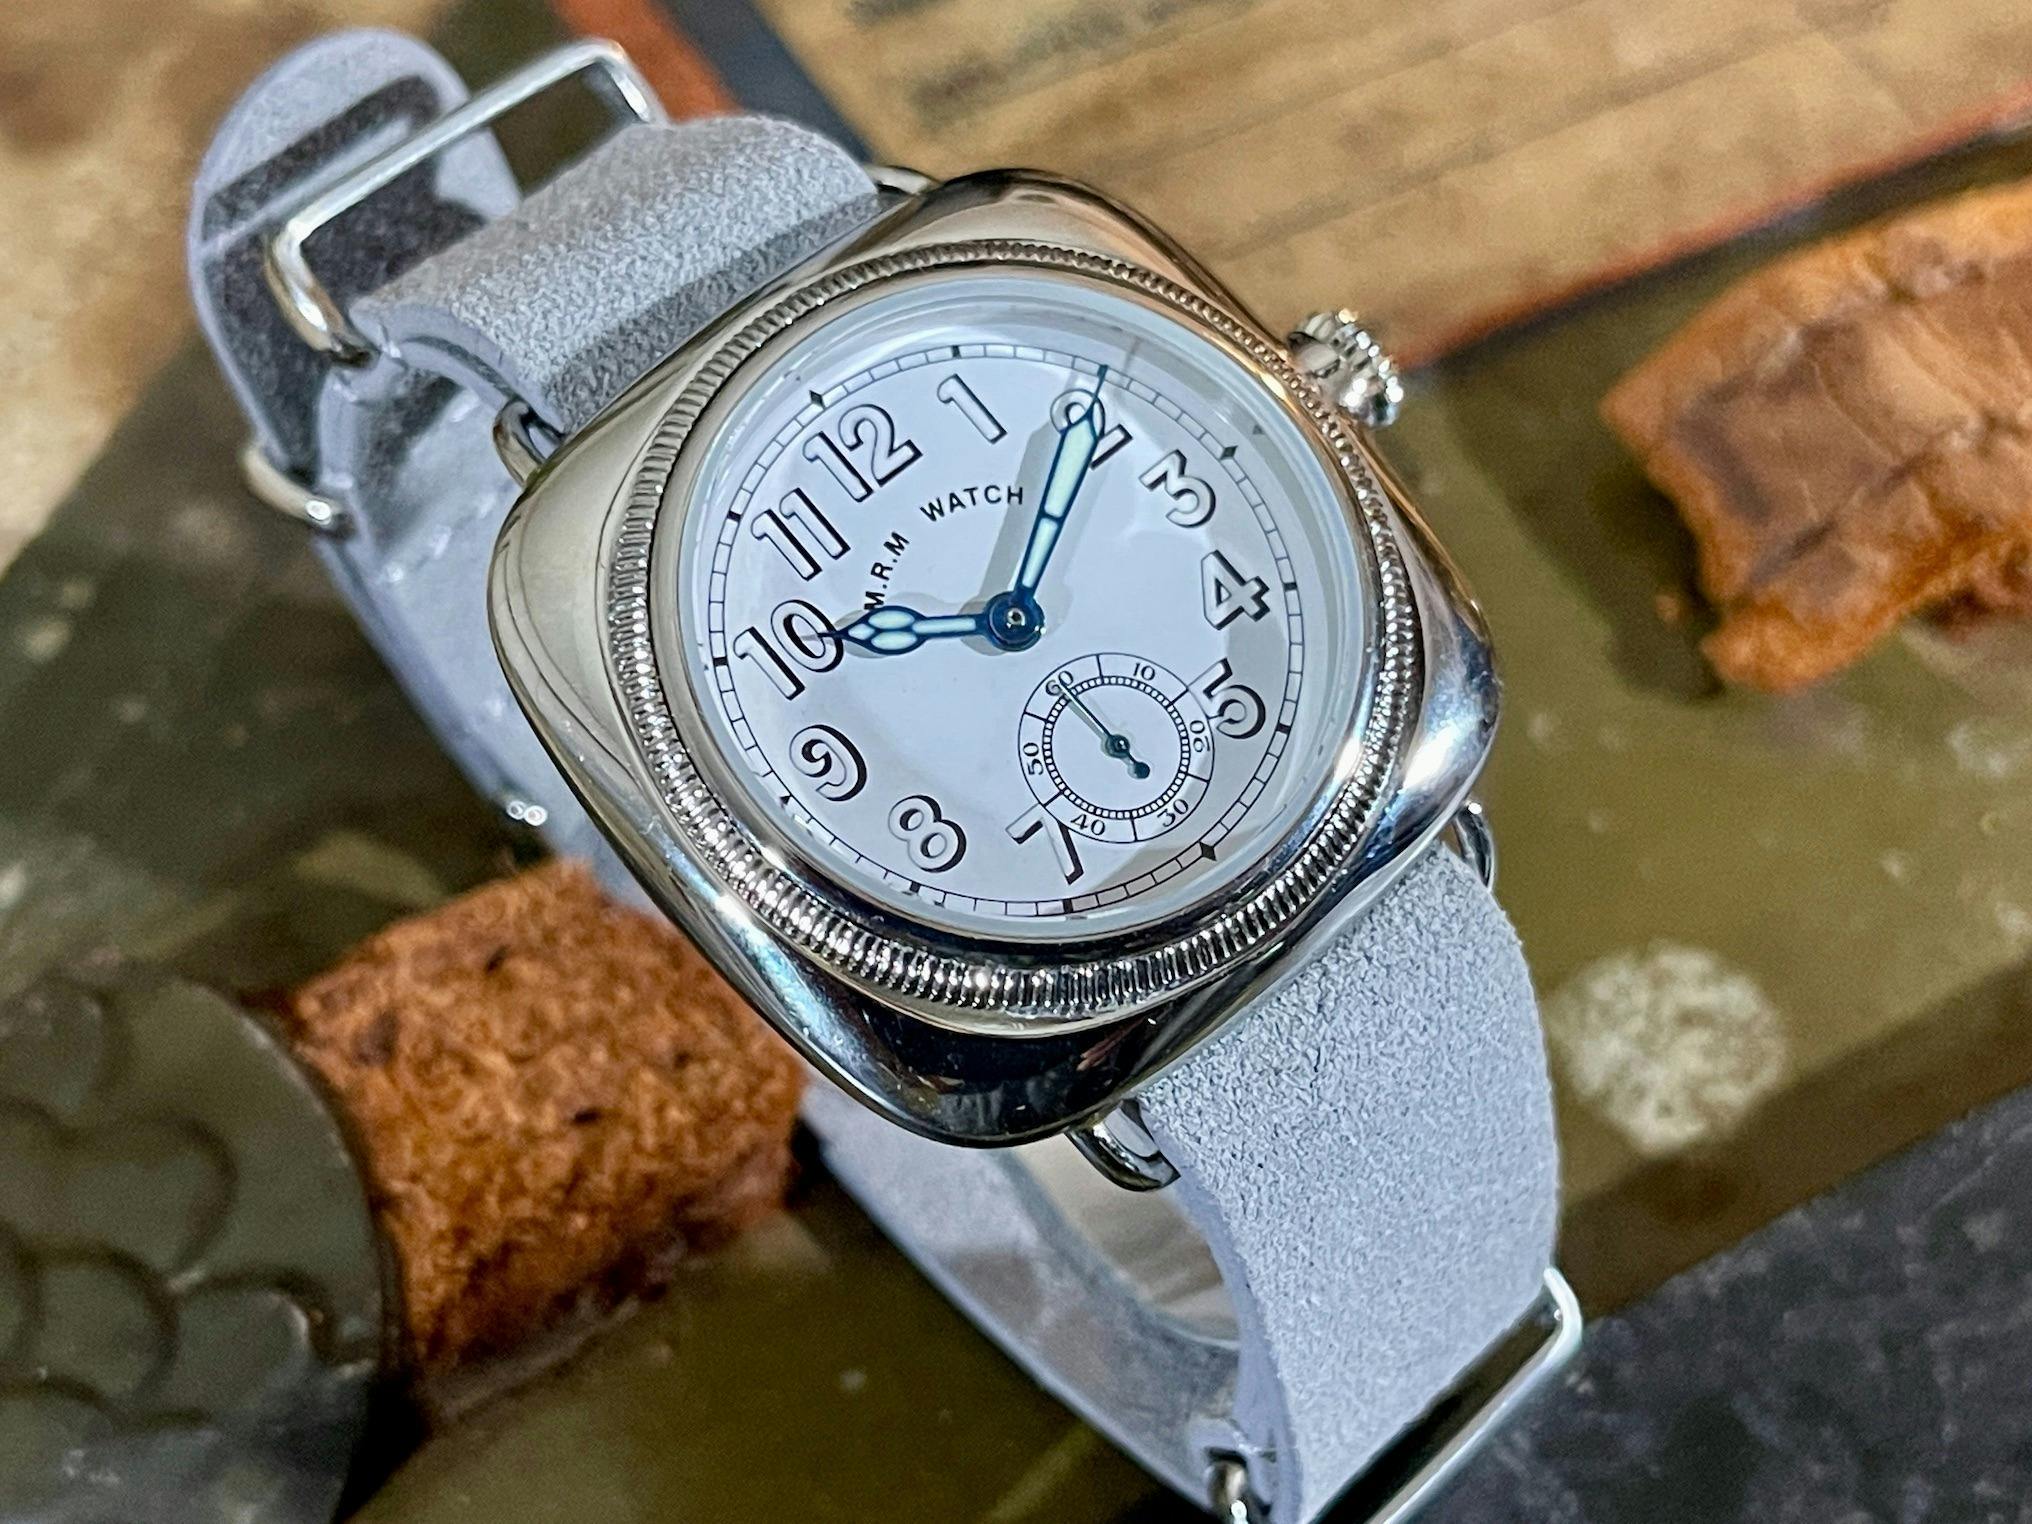 アンティーク腕時計の名作 1930年代クッションウォッチを復刻!